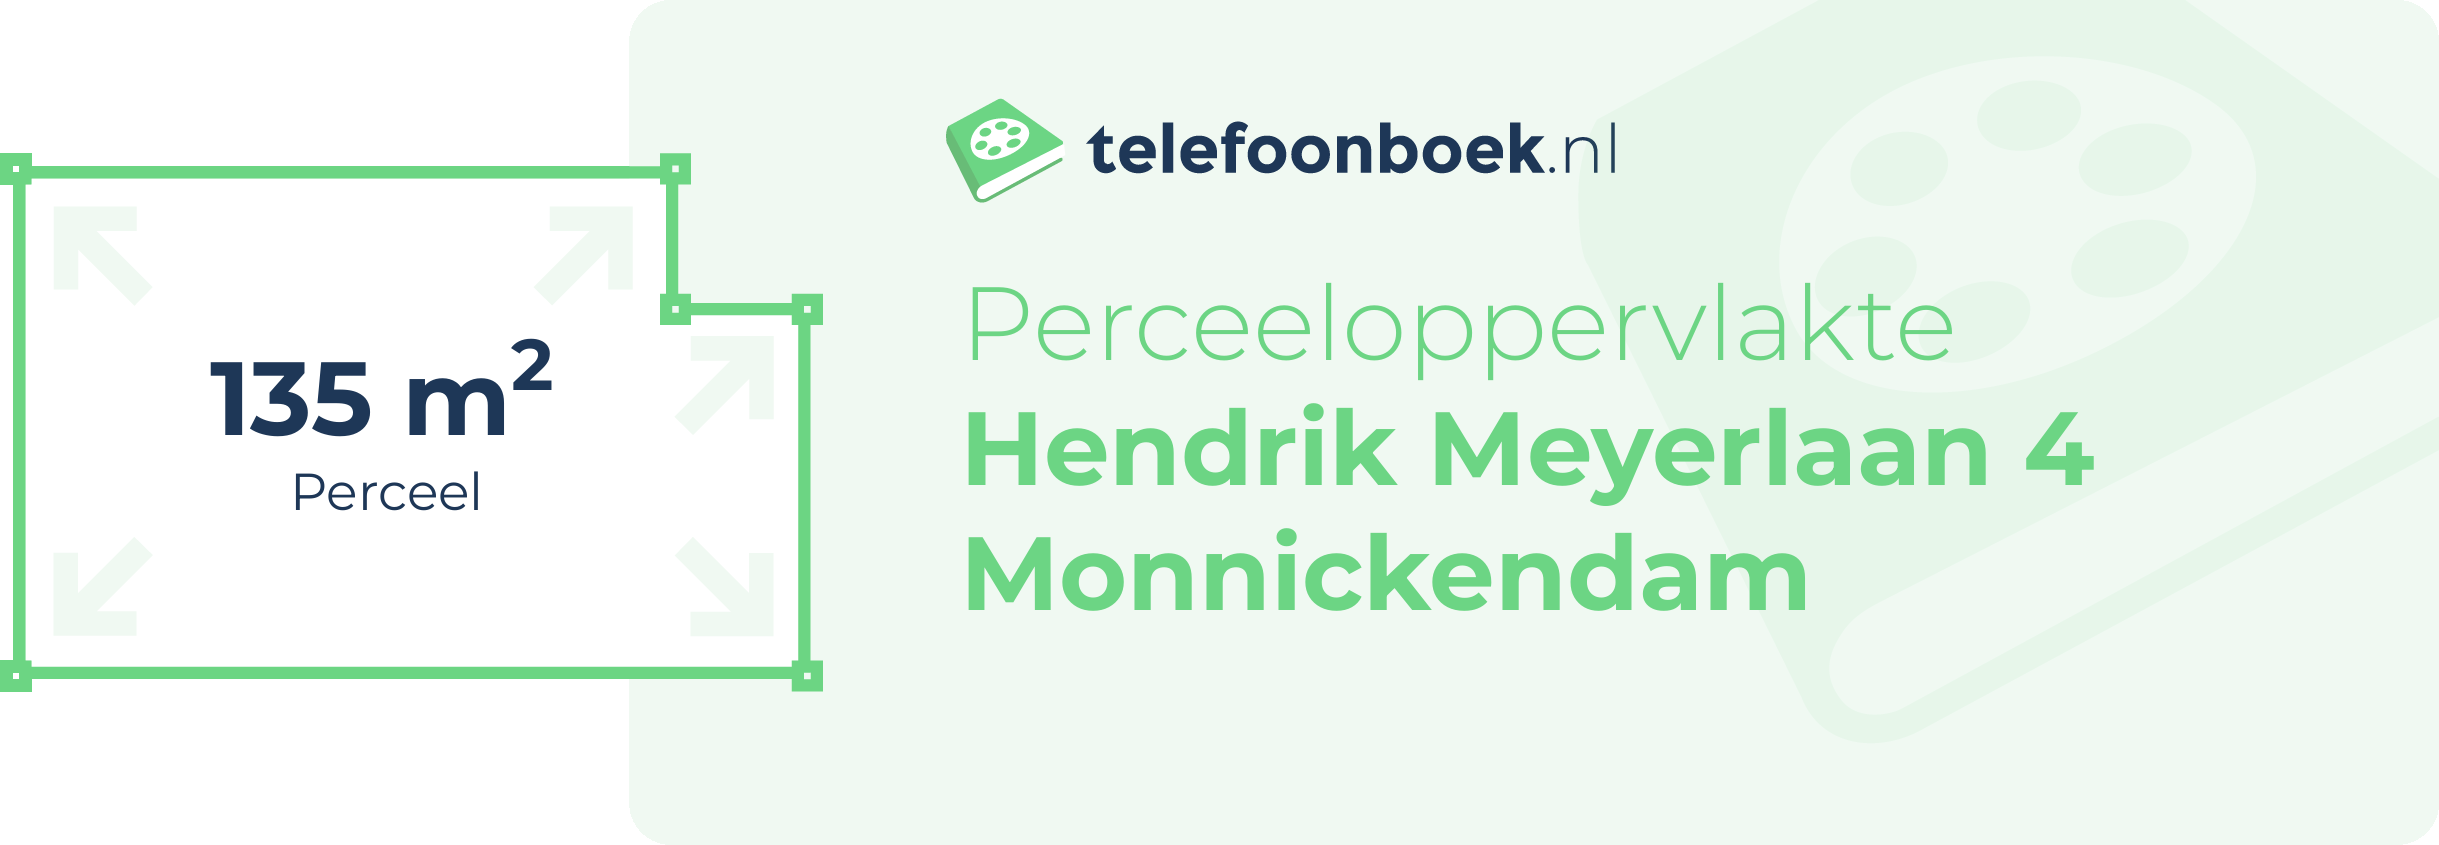 Perceeloppervlakte Hendrik Meyerlaan 4 Monnickendam